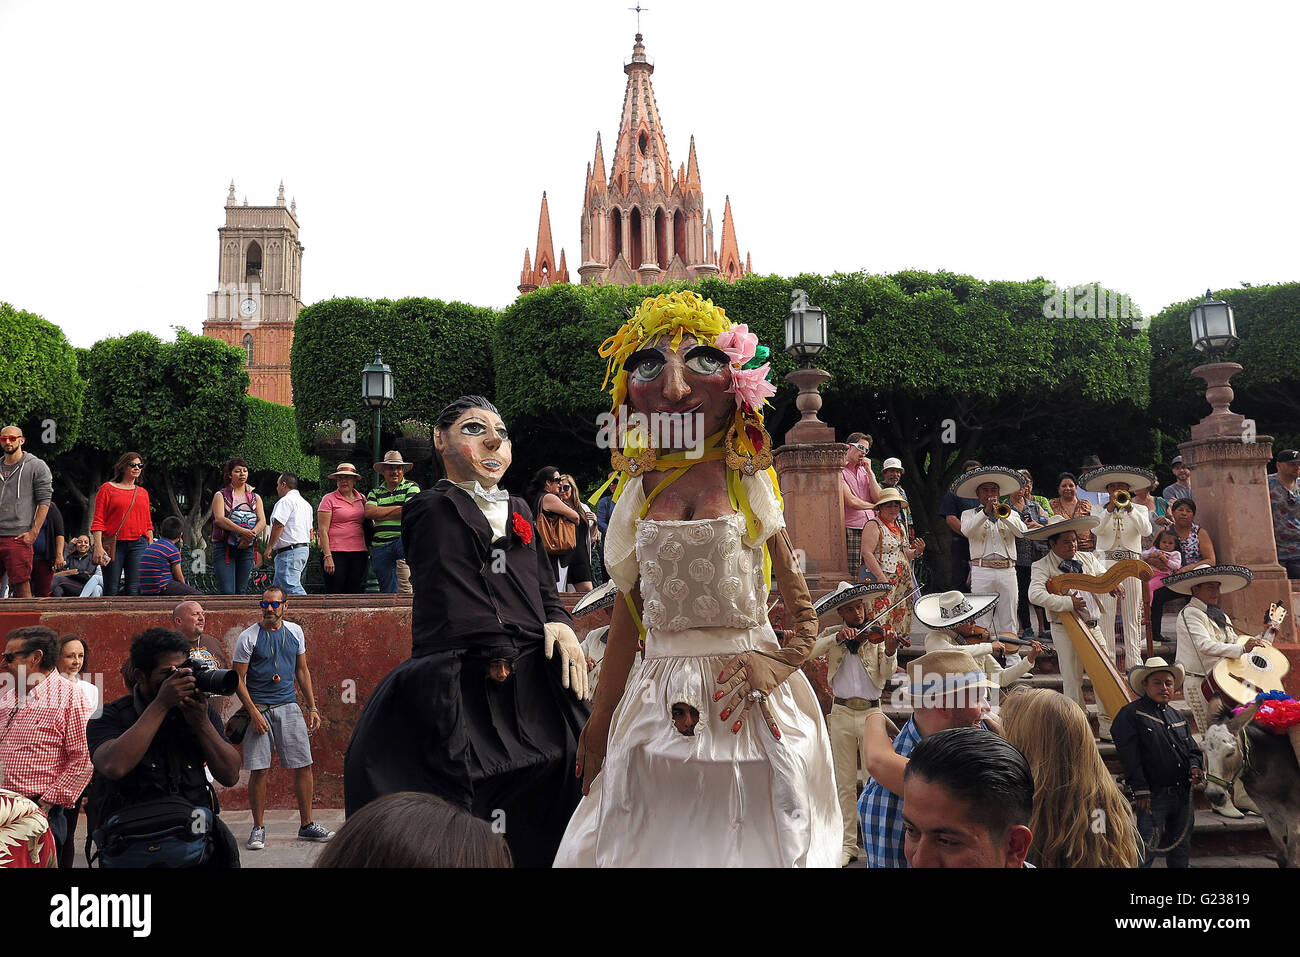 San Miguel De Allende, Mexiko. 18. April 2016. Eine Hochzeit Parade marschiert durch die Straßen in San Miguel de Allende. Die Hochzeit-Parade ist komplett mit feierlichen Esel, eine Mariachi-Band und riesige Papier Papiermache Bildnisse (Mojigangas). (Kredit-Bild: © Julie Rogers / via ZUMA Draht) Stockfoto